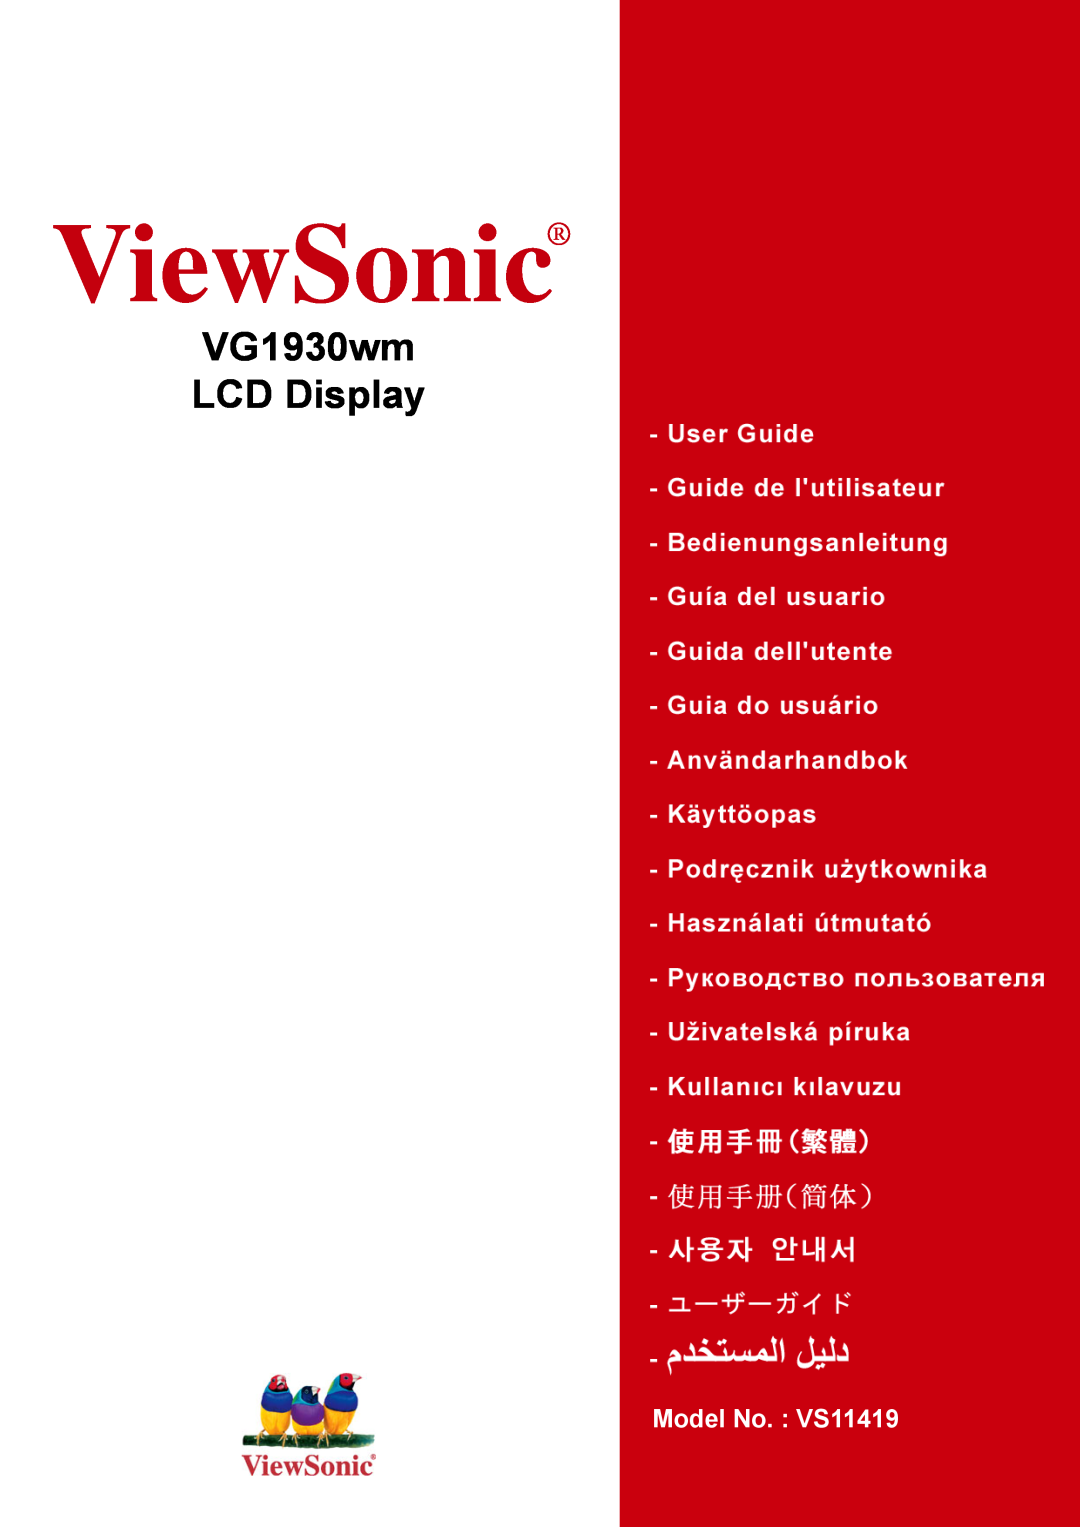 ViewSonic manual ViewSonic, VG1930wm LCD Display, Model No. VS11419 